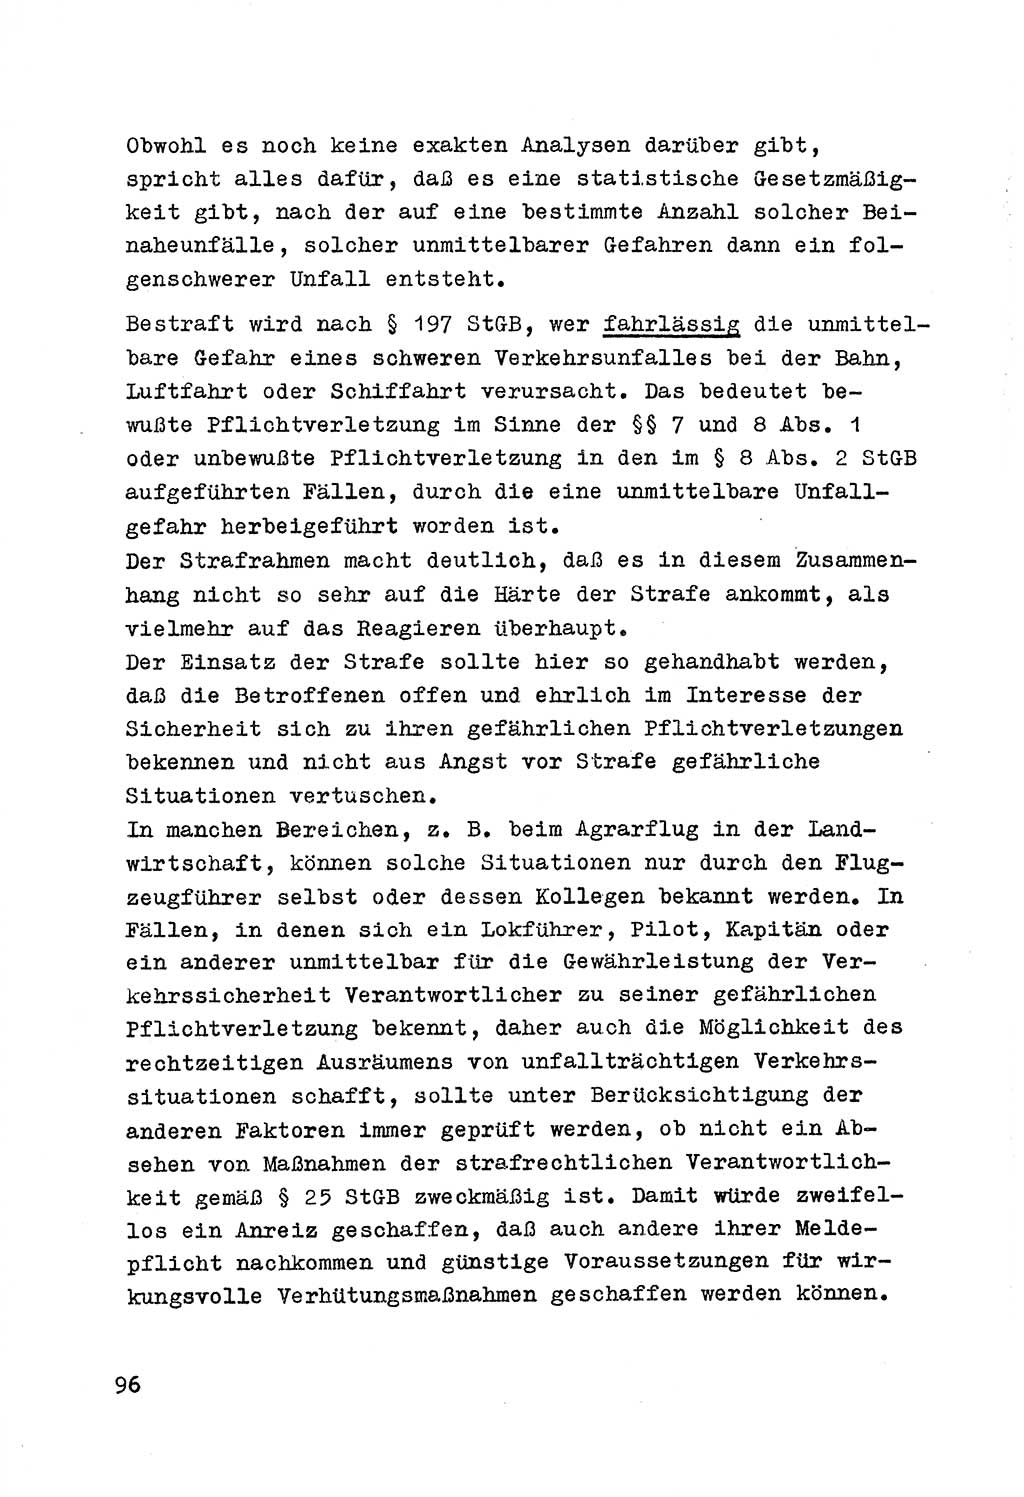 Strafrecht der DDR (Deutsche Demokratische Republik), Besonderer Teil, Lehrmaterial, Heft 7 1970, Seite 96 (Strafr. DDR BT Lehrmat. H. 7 1970, S. 96)